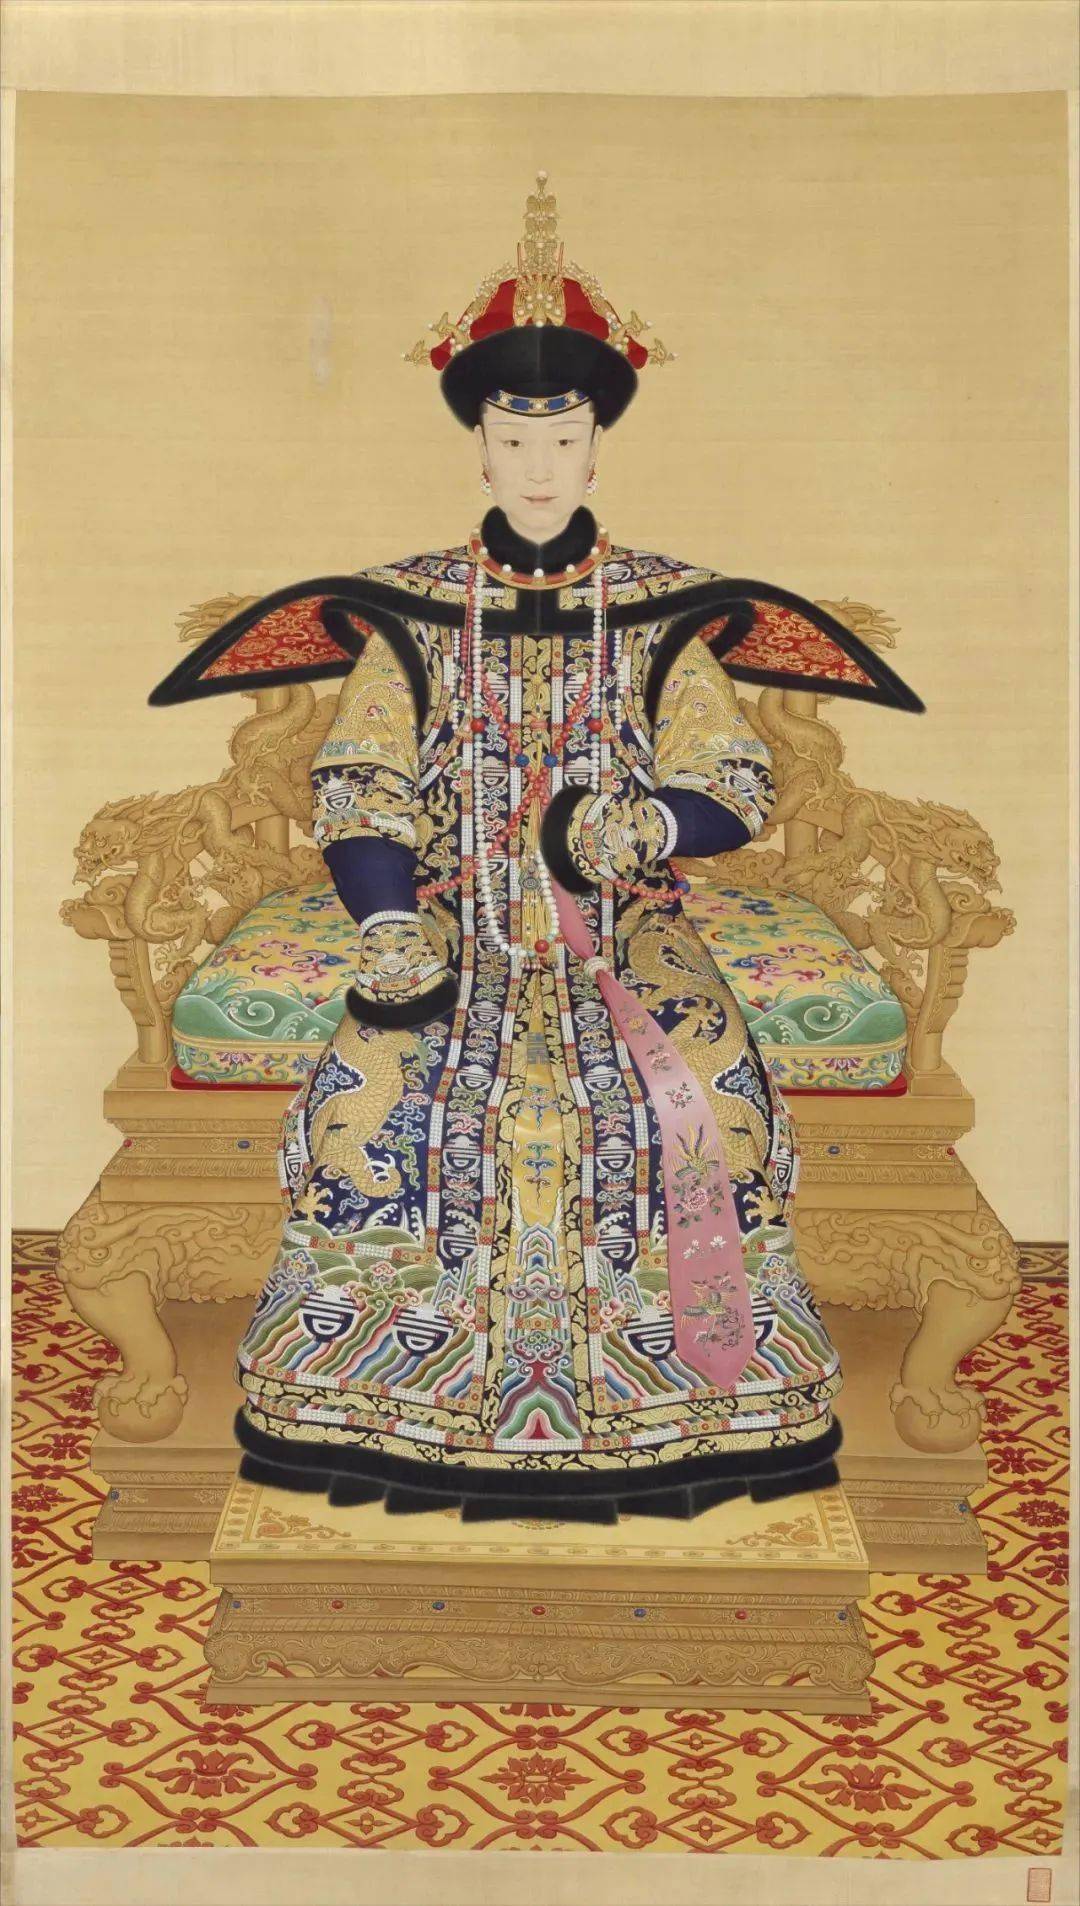 清朝王妃服饰图片